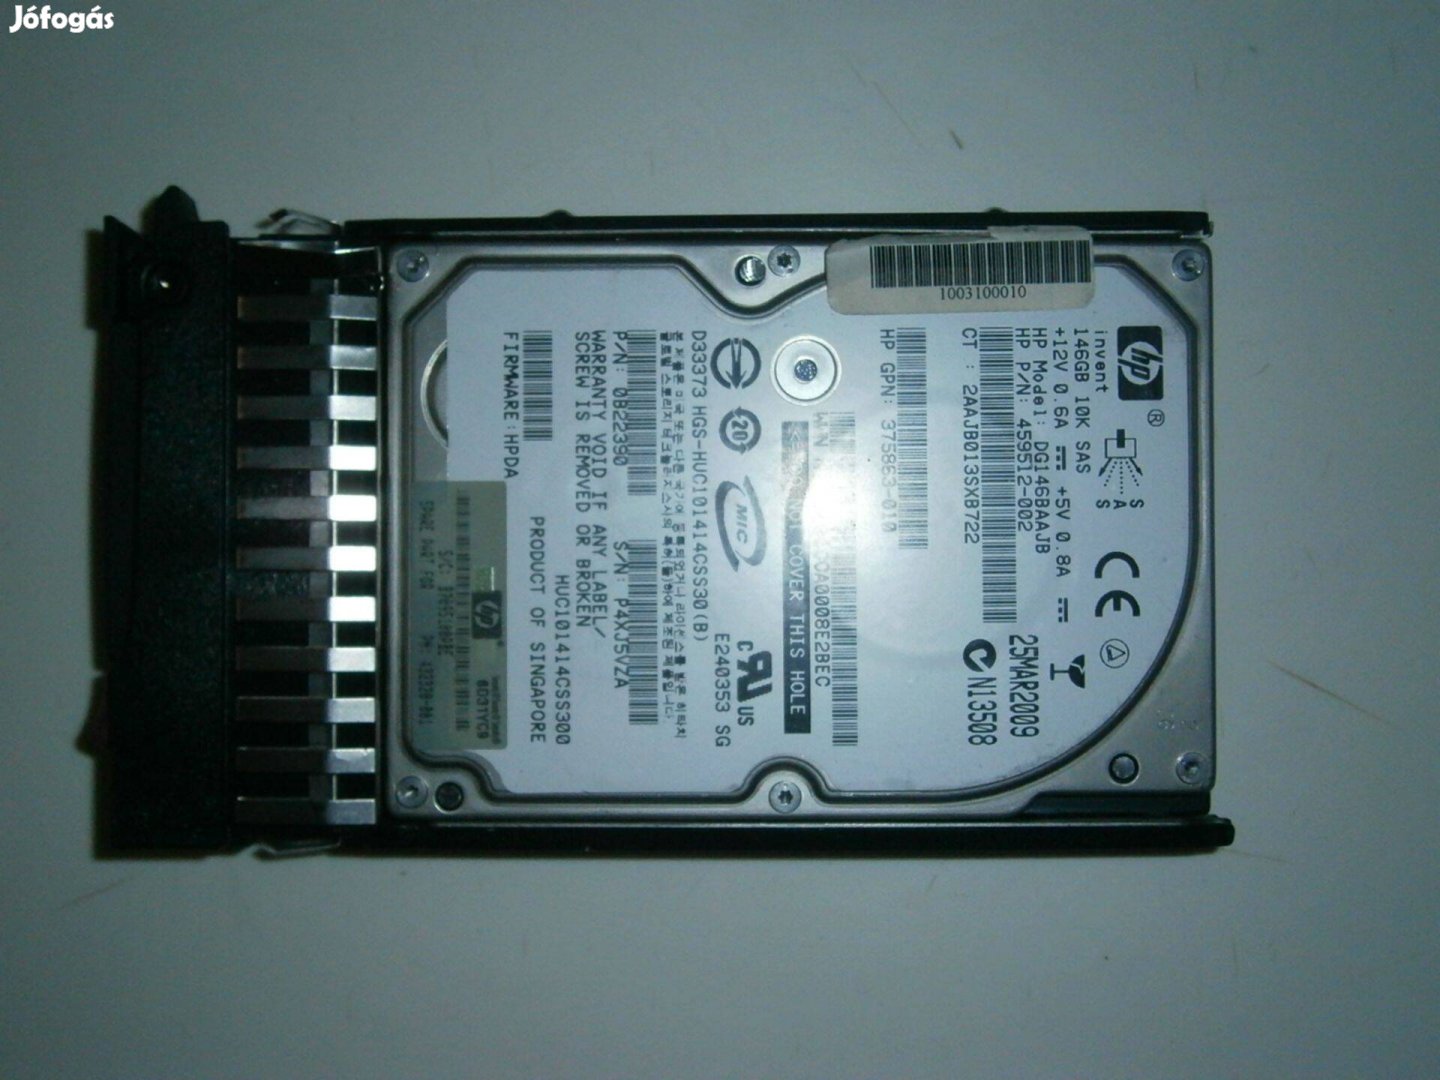 Eladó két használt 146GB-os HP SAS szerver merevlemez (HDD) kerettel